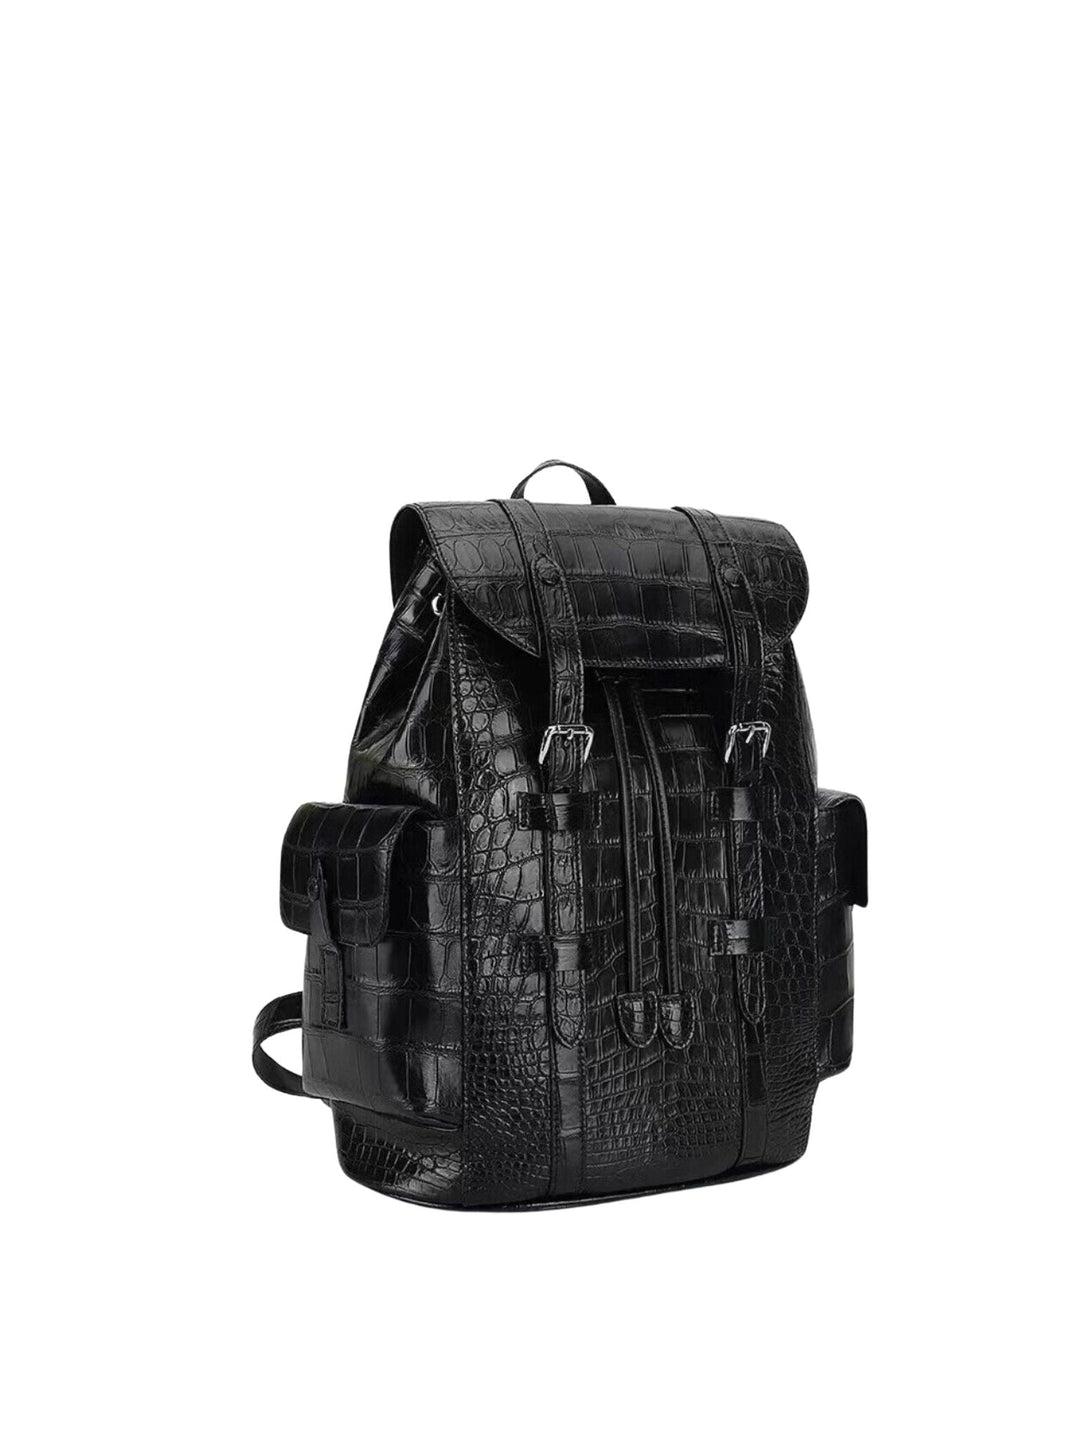 Black Alligator Backpack